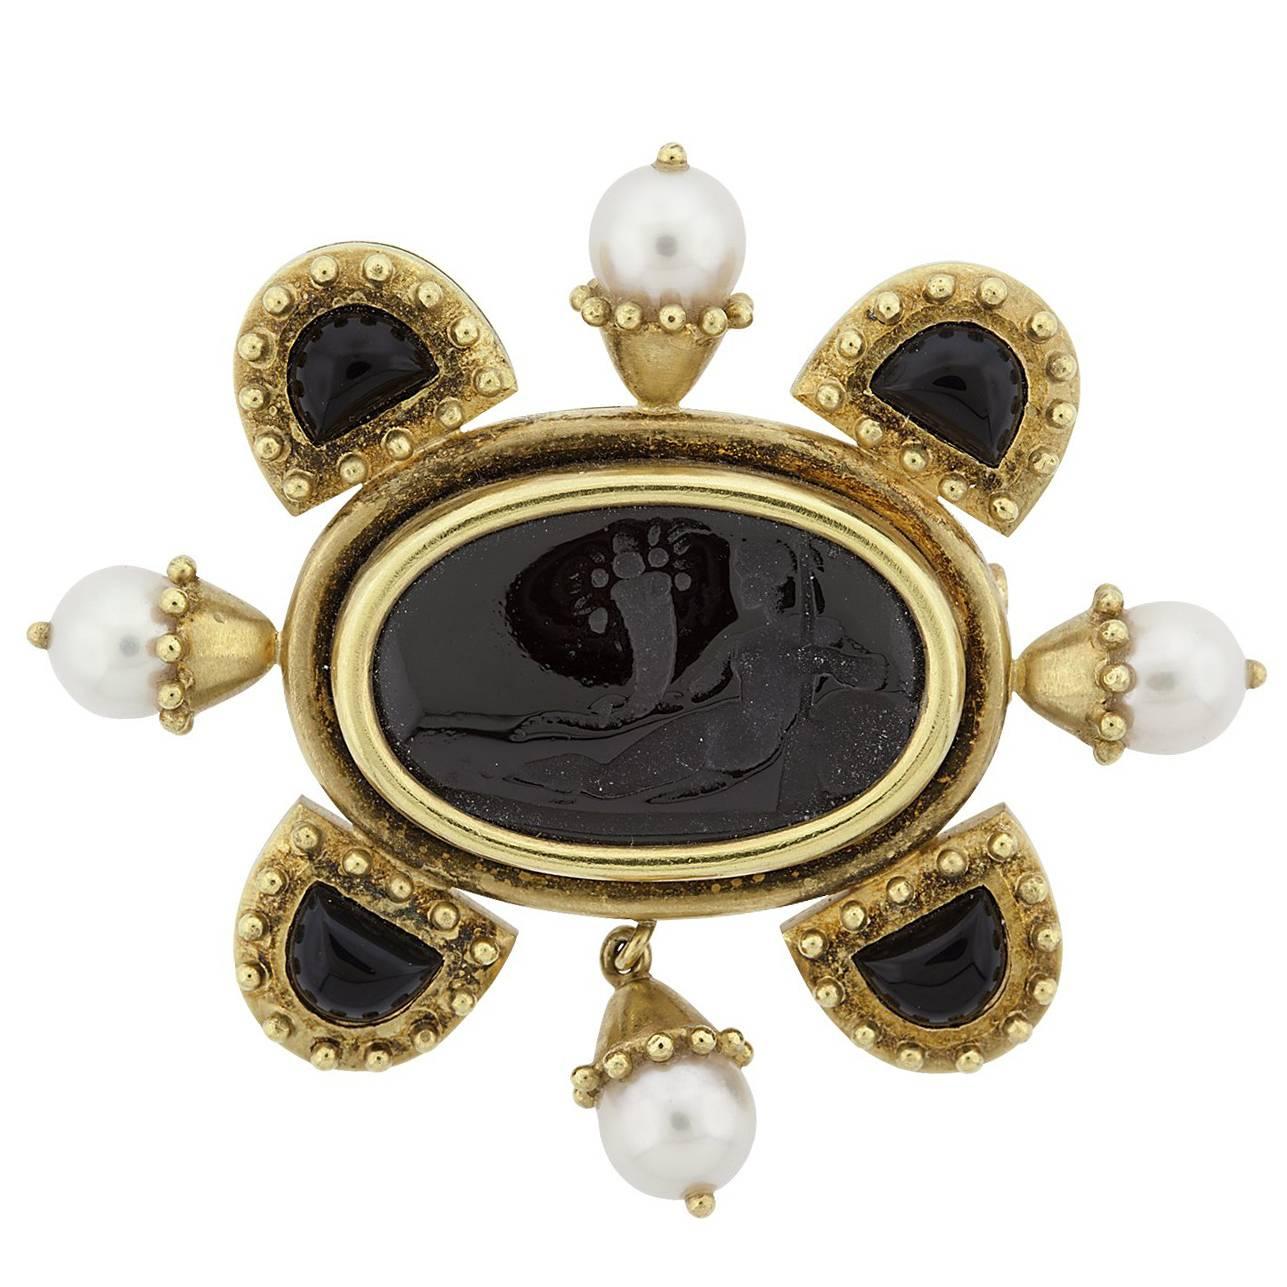 Elizabeth Locke Onyx Intaglio and Cultured Pearl Gold Brooch